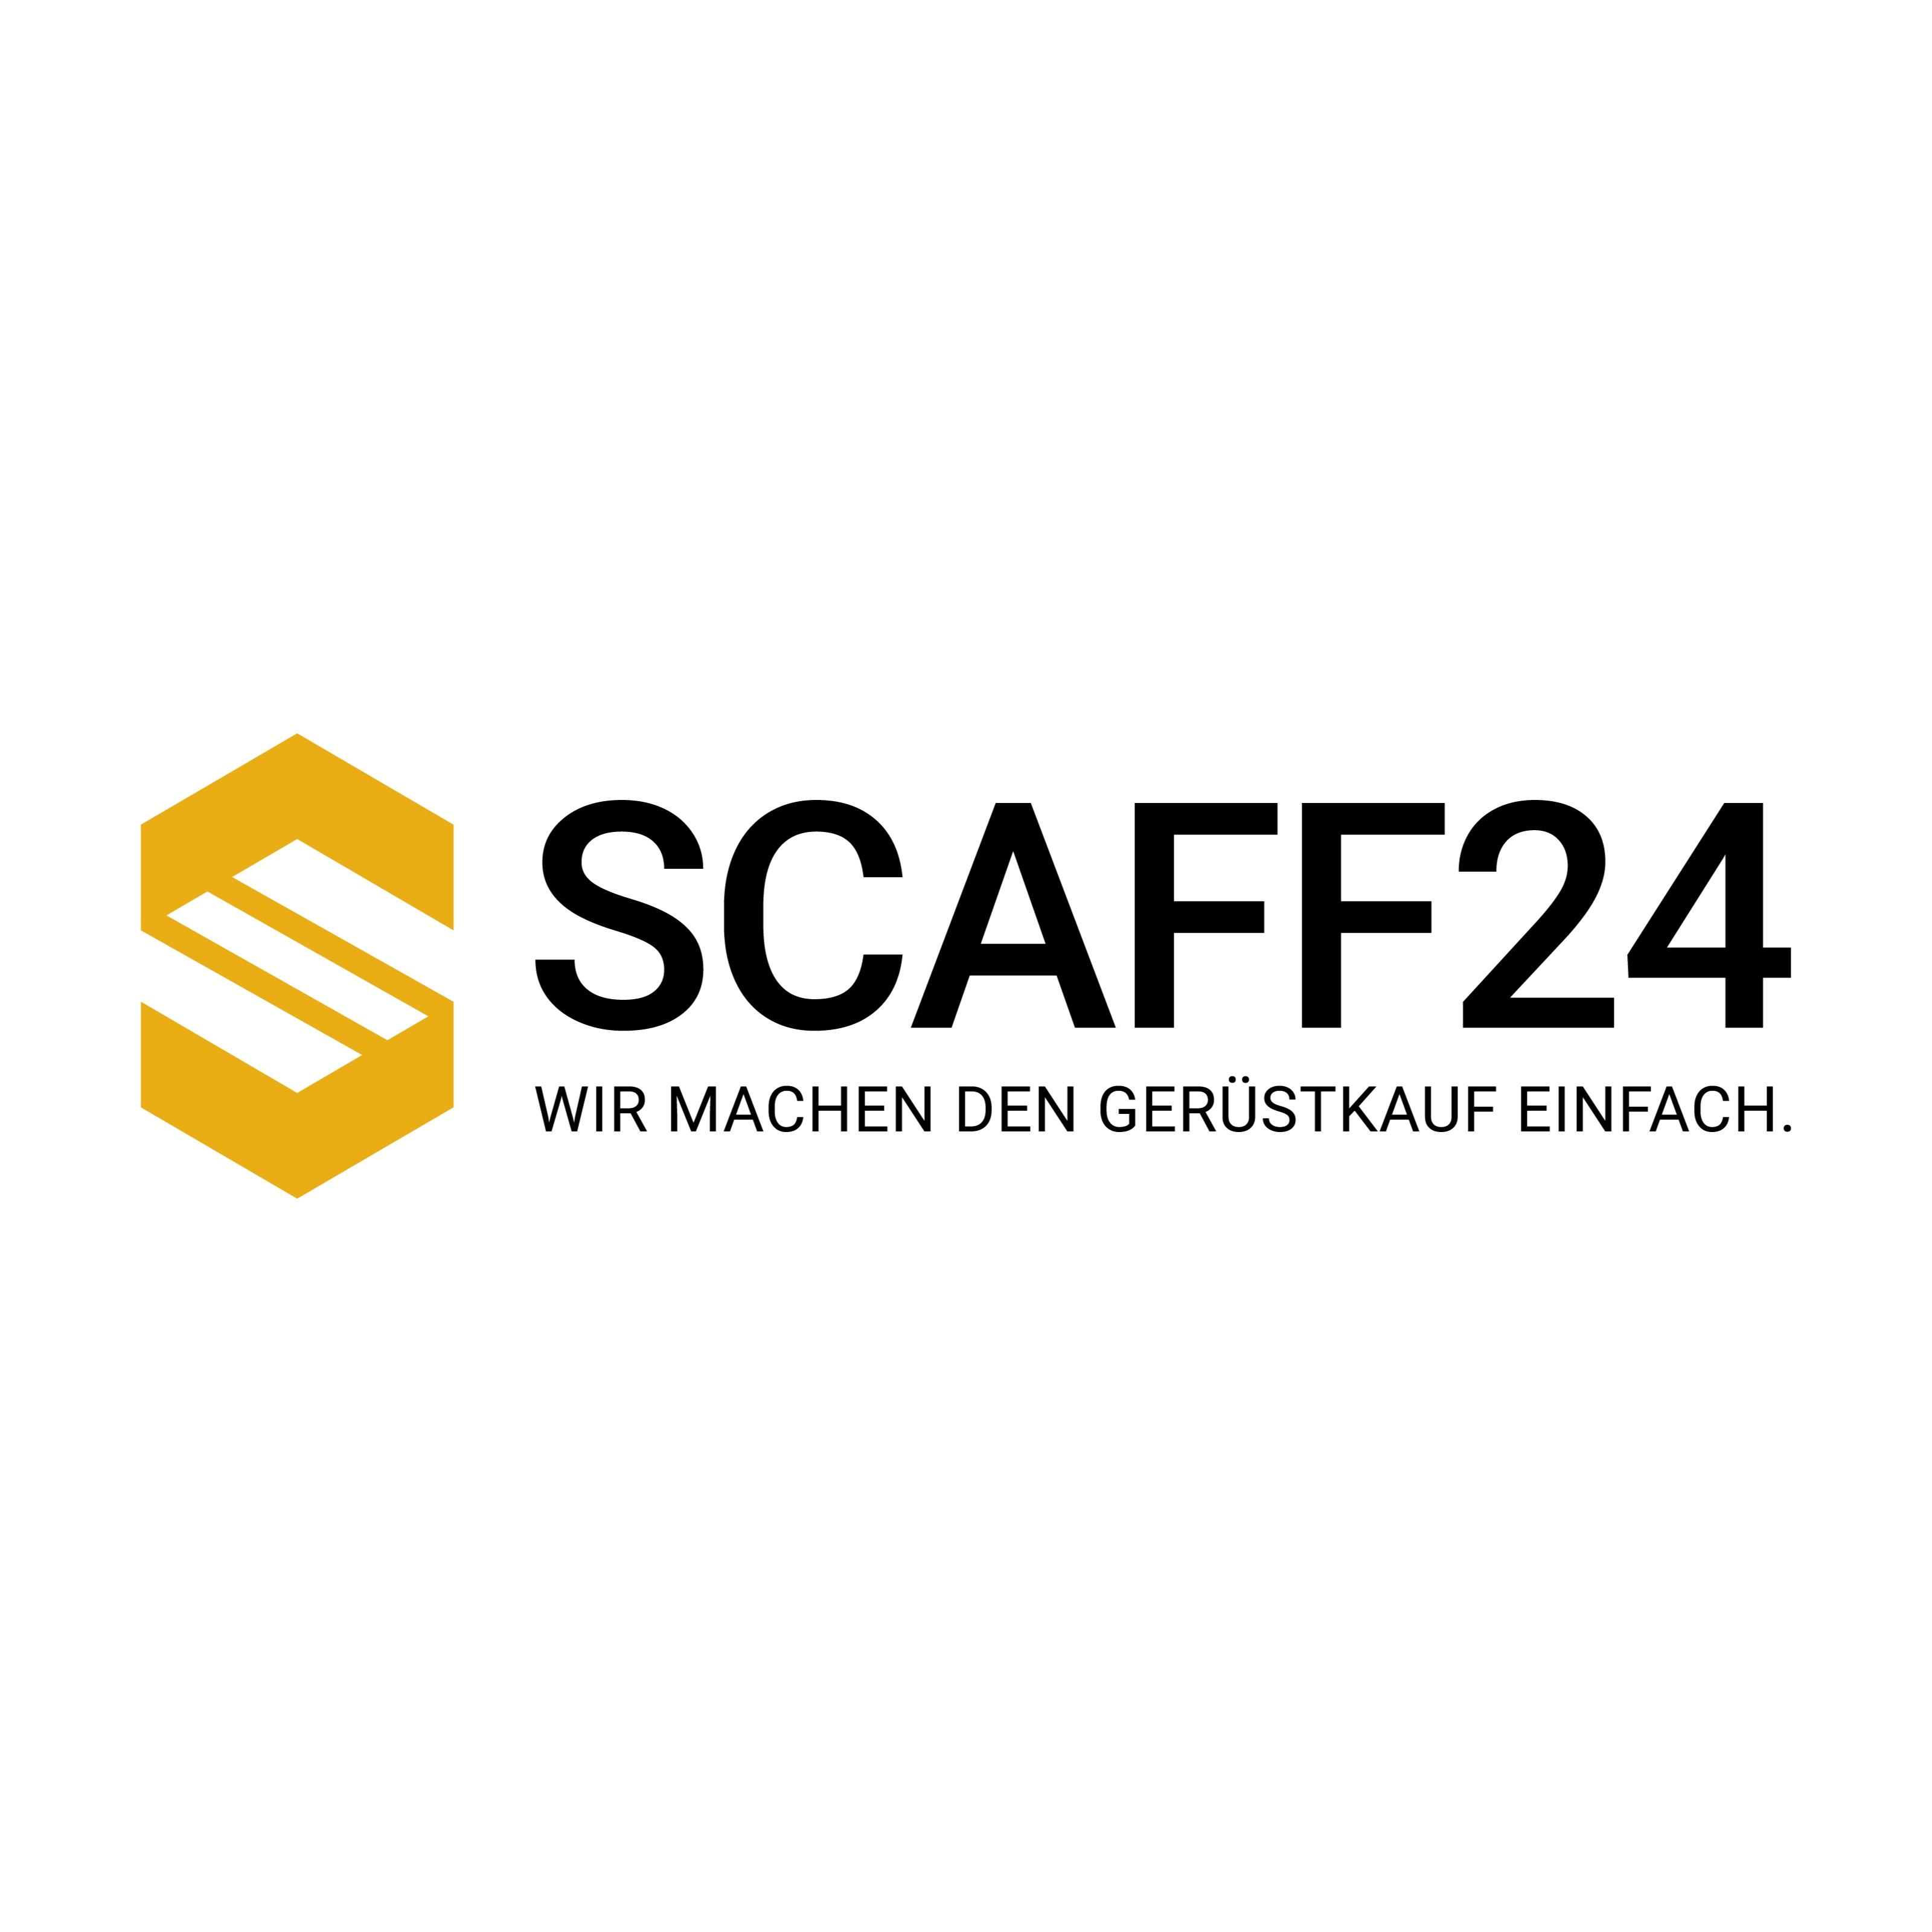 Scaff24 - Gerüst kaufen Günstig neu und Gebraucht in Lengede - Logo